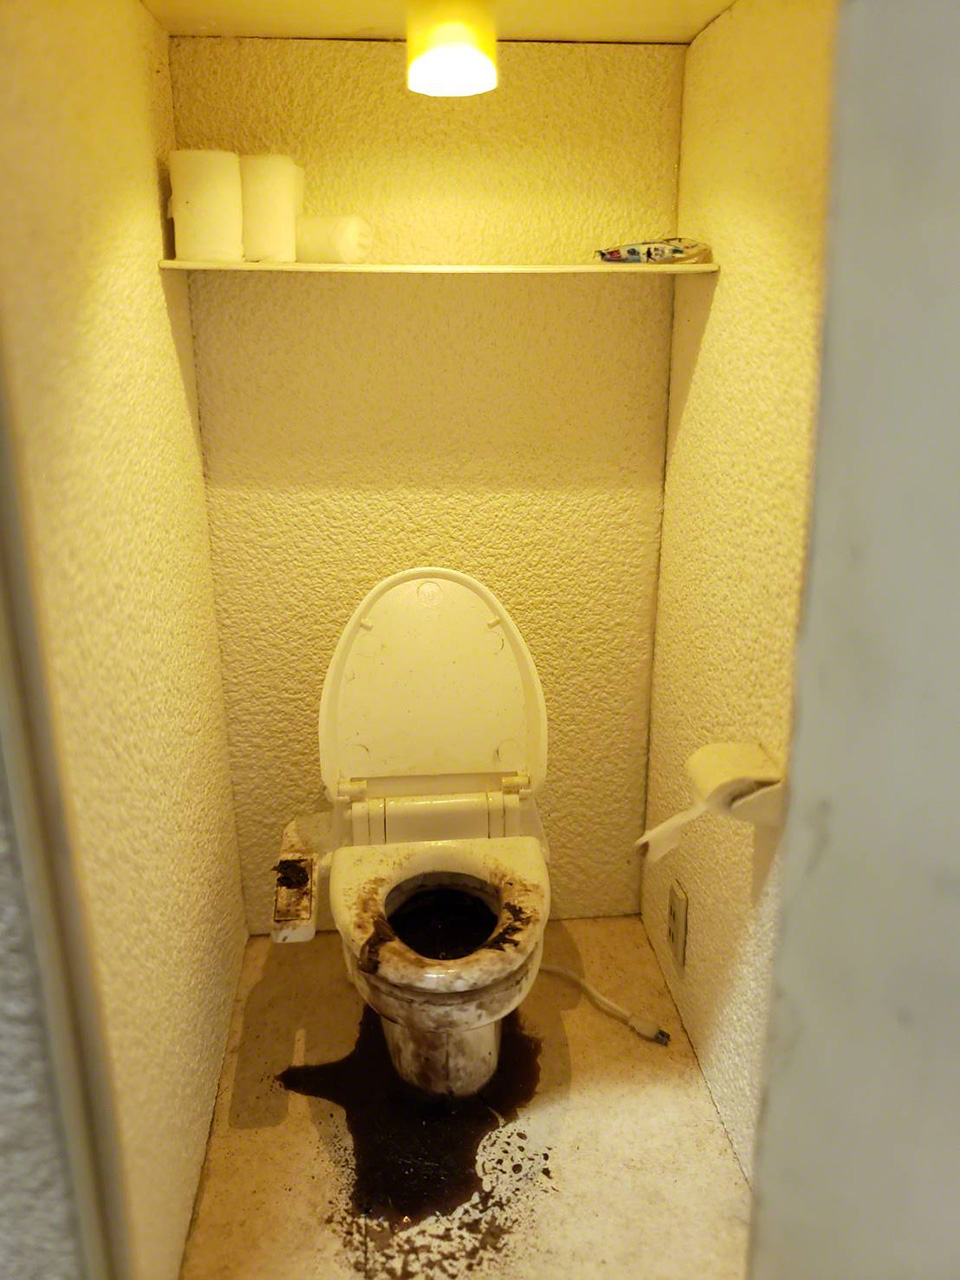 Le diorama de Kojima « Kodokushi, provoqué par un choc thermique sur les toilettes » véhicule le message du danger mortel de ce phénomène.